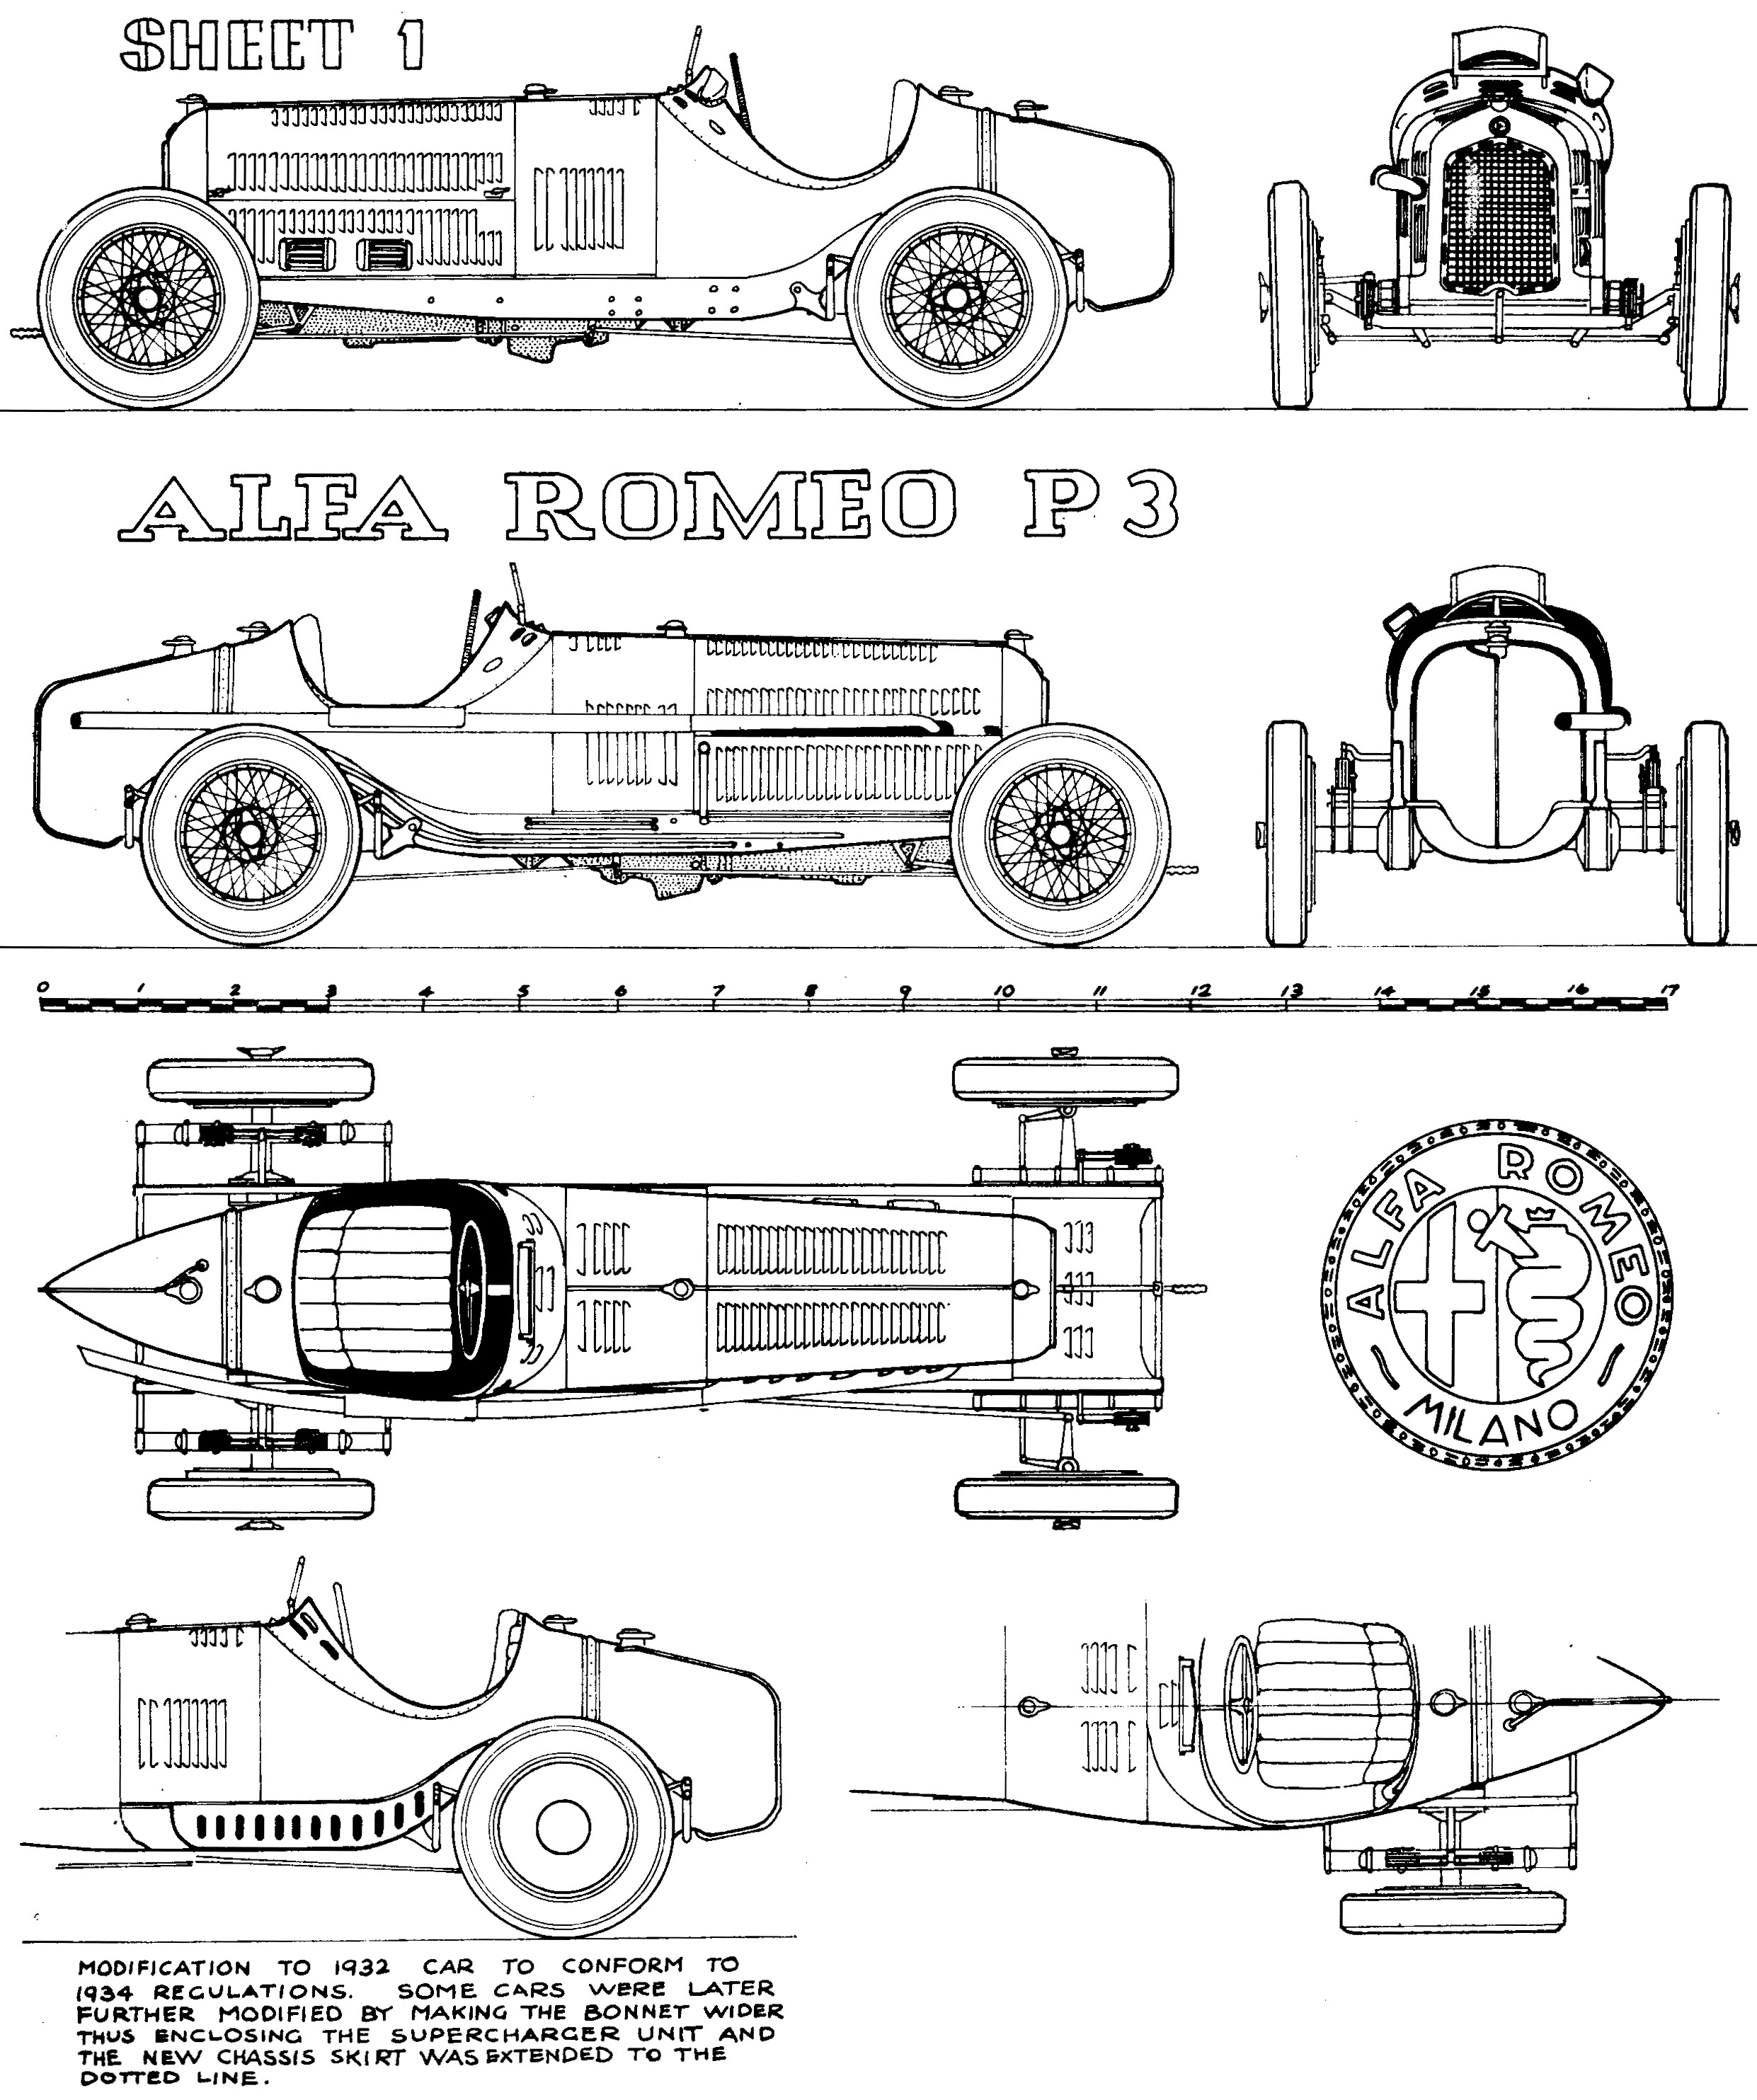 Diagram Of Car Frame Alfa Romeo P3 1932 33 Smcars Net Car Blueprints forum